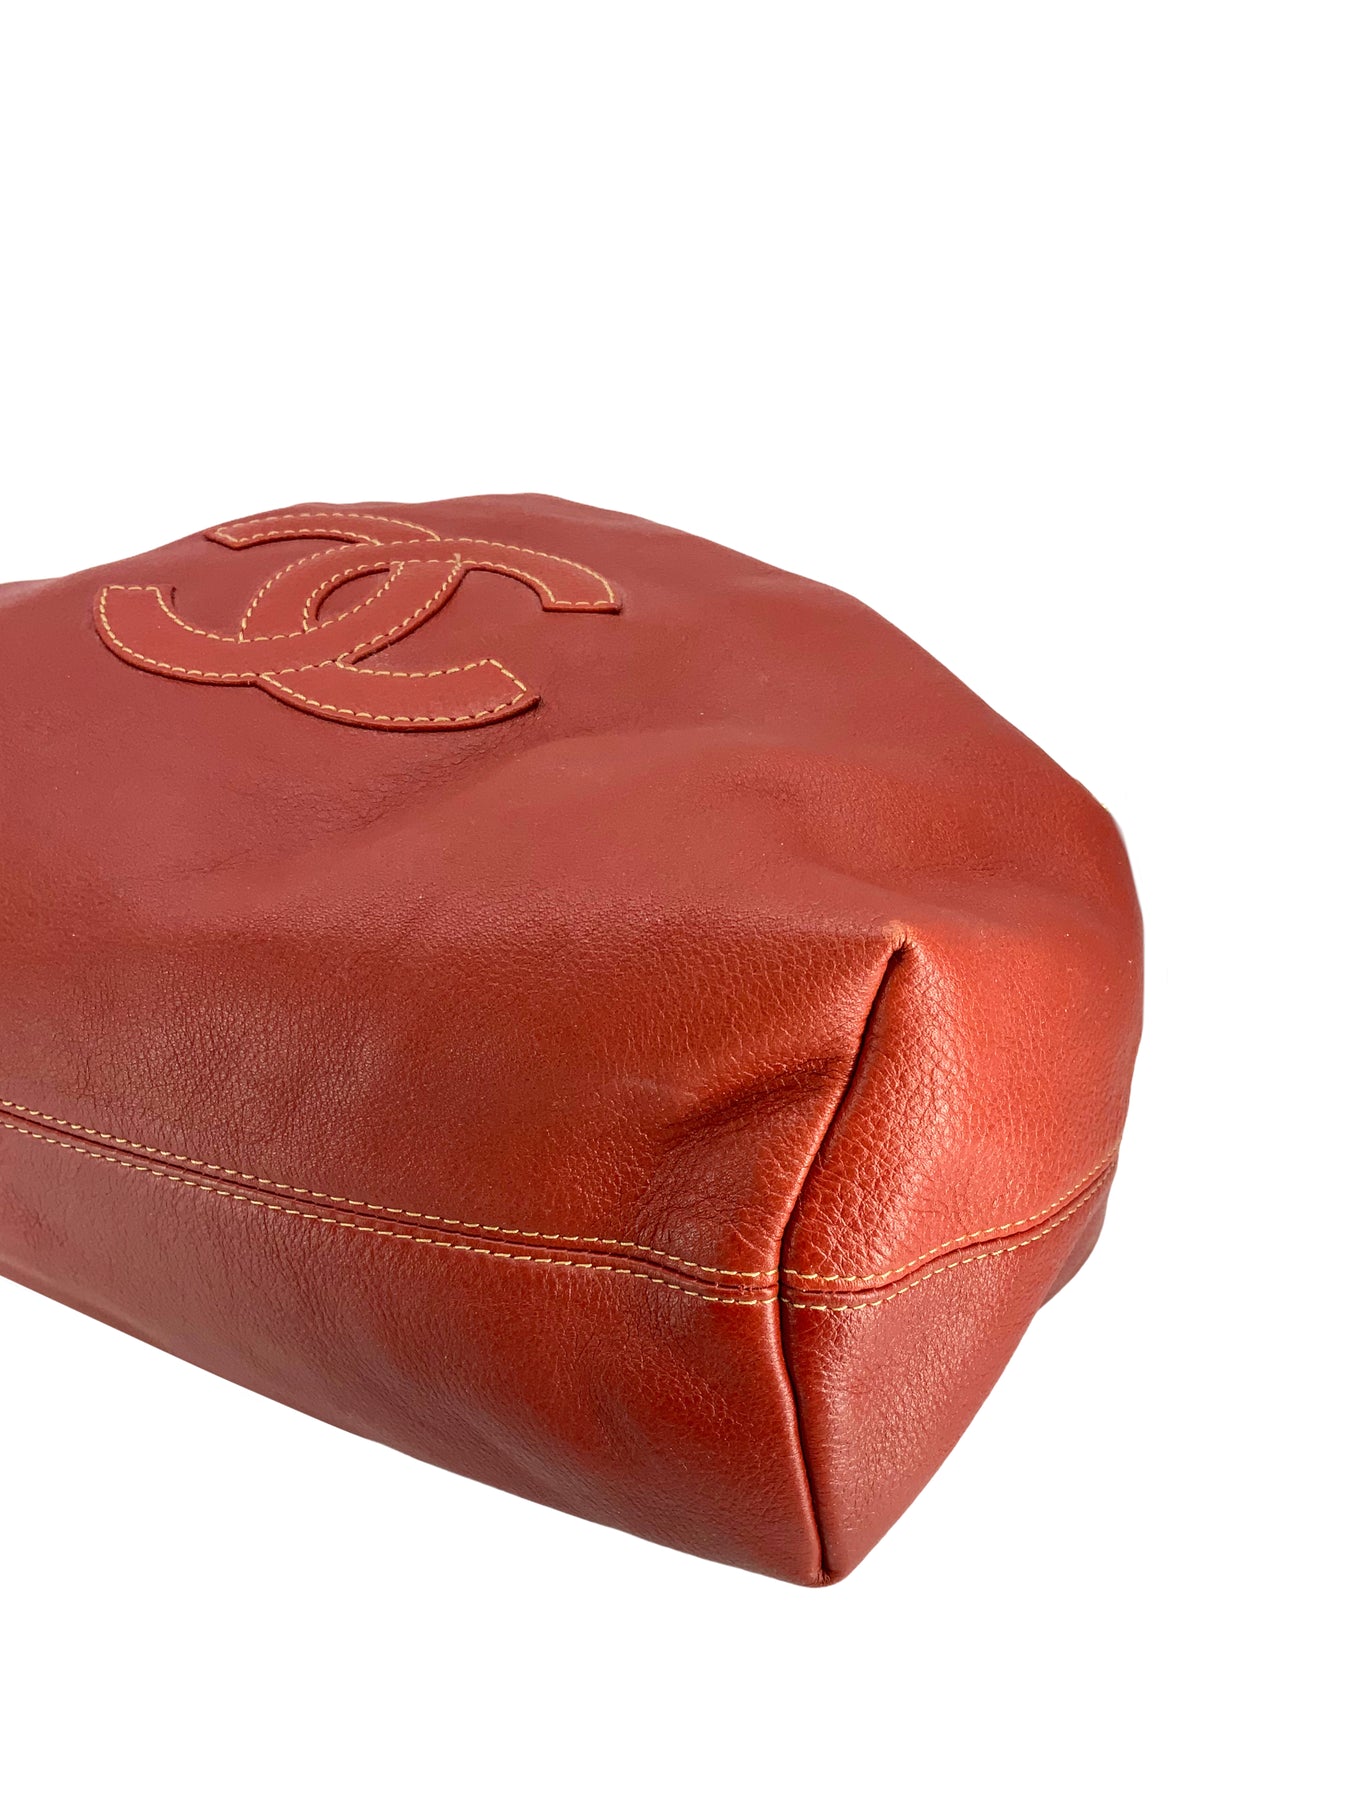 chanel shoulder bag vintage leather